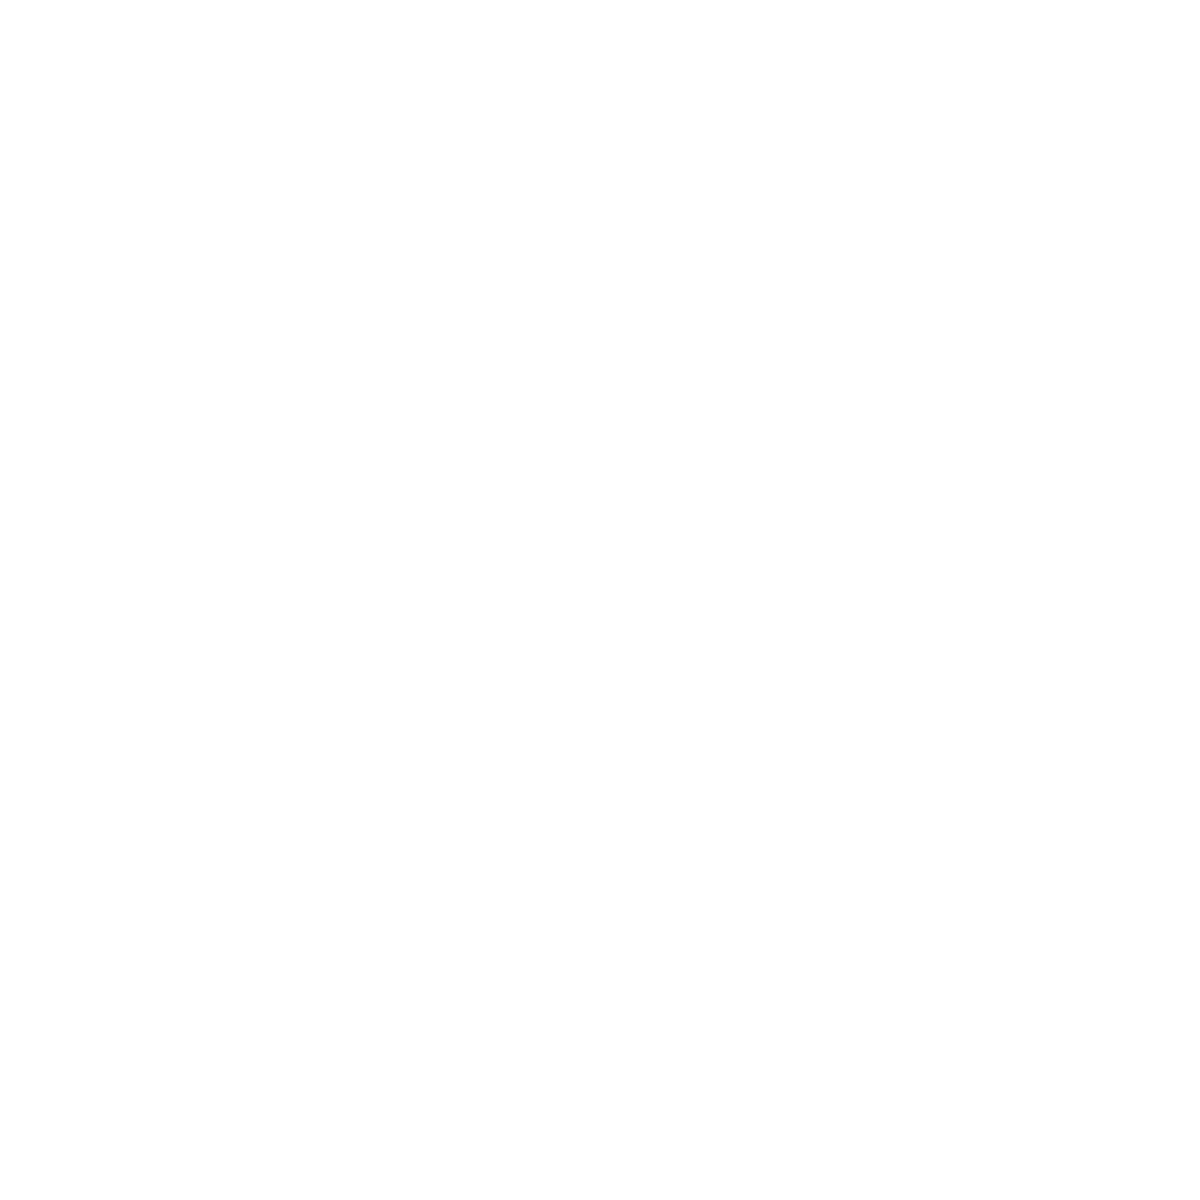 Y3shuasaves